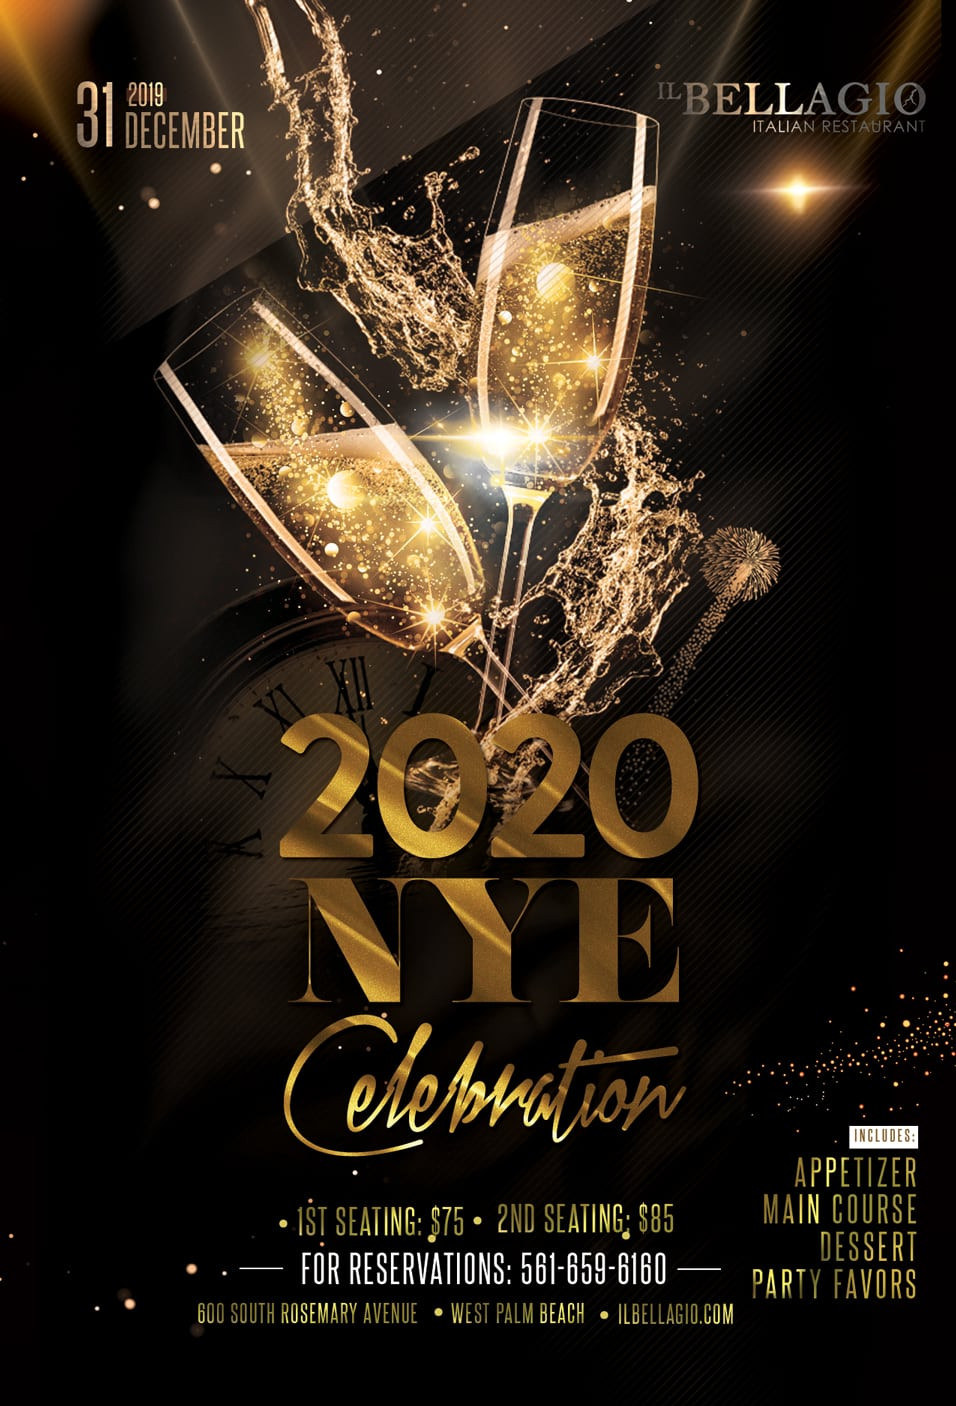 New Year'S Eve Dinner Nyc 2020
 2020 New Year s Eve Dinner Reservation